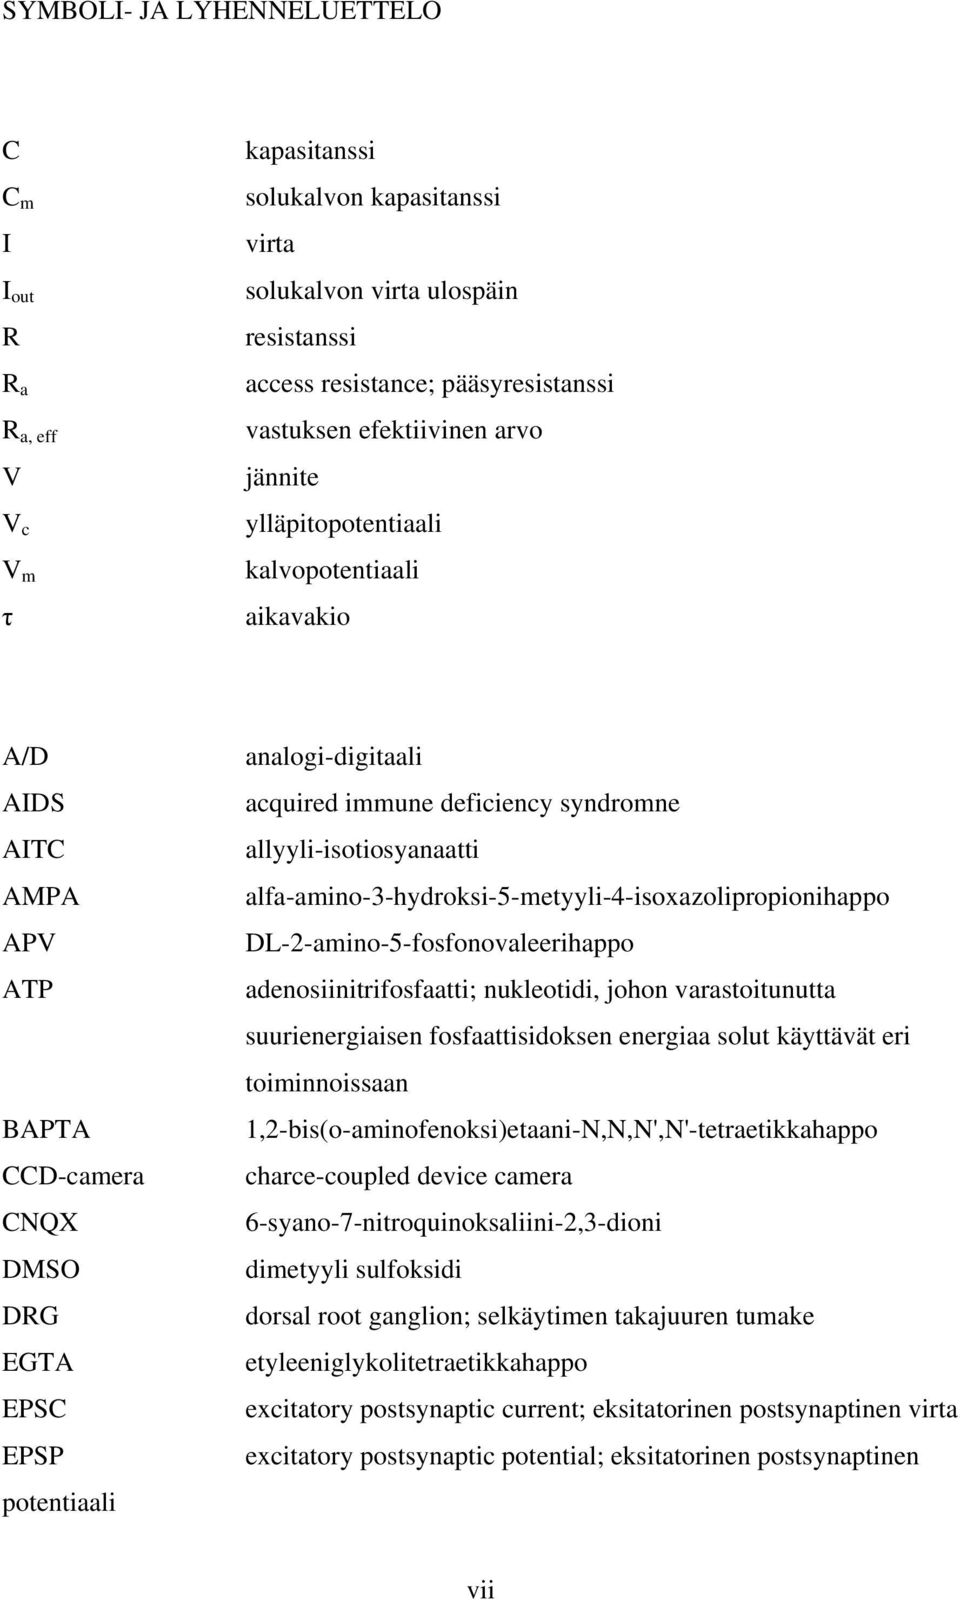 deficiency syndromne allyyli-isotiosyanaatti alfa-amino-3-hydroksi-5-metyyli-4-isoxazolipropionihappo DL-2-amino-5-fosfonovaleerihappo adenosiinitrifosfaatti; nukleotidi, johon varastoitunutta